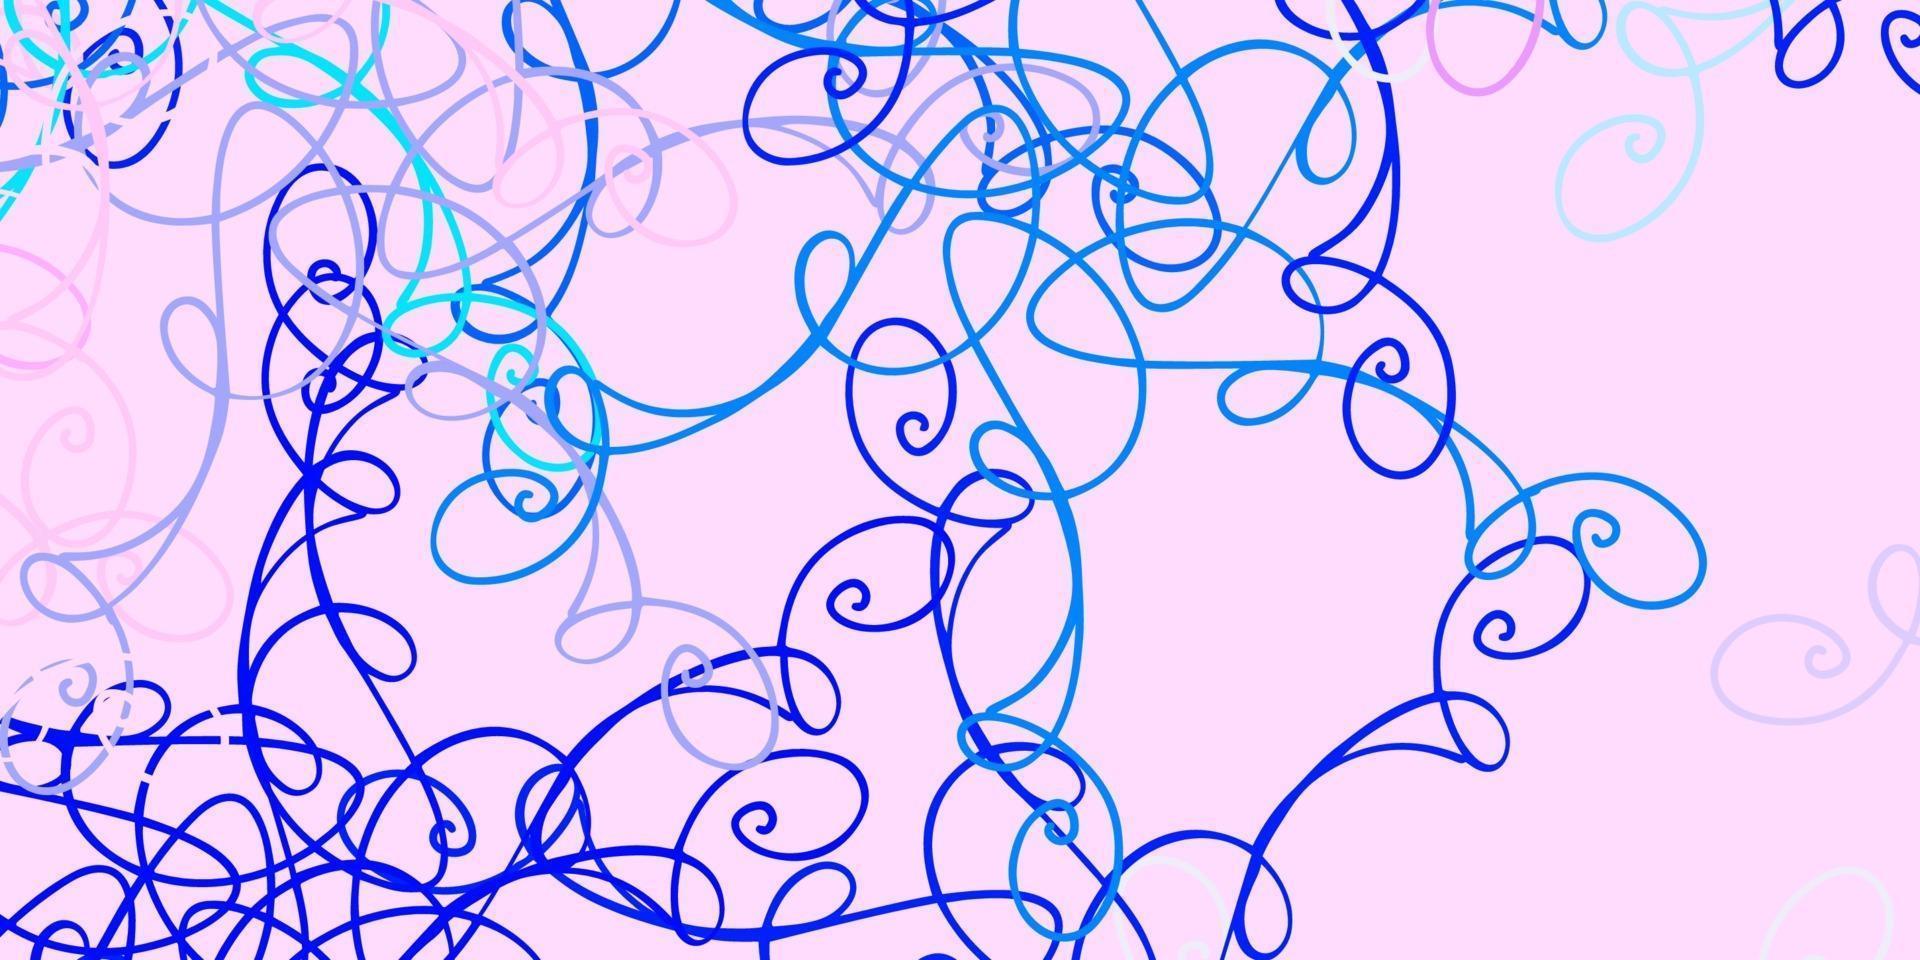 padrão de vetor rosa claro, azul com linhas curvas.